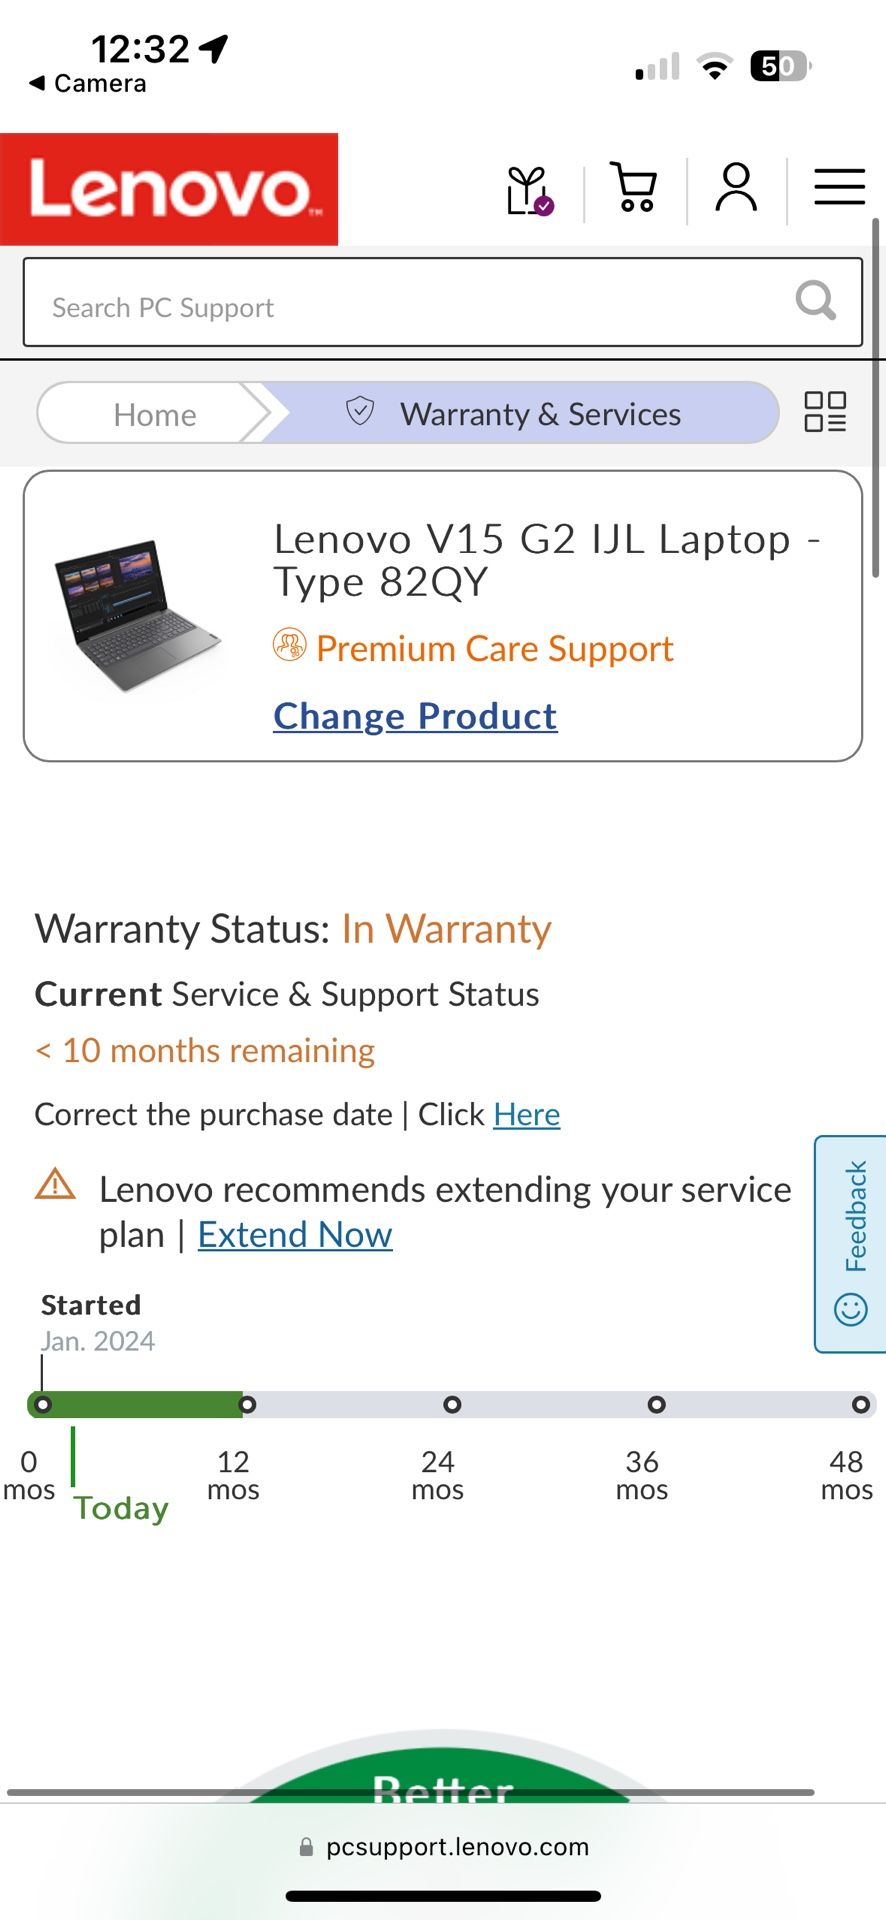 Lenovo V15 G2 W/Warranty